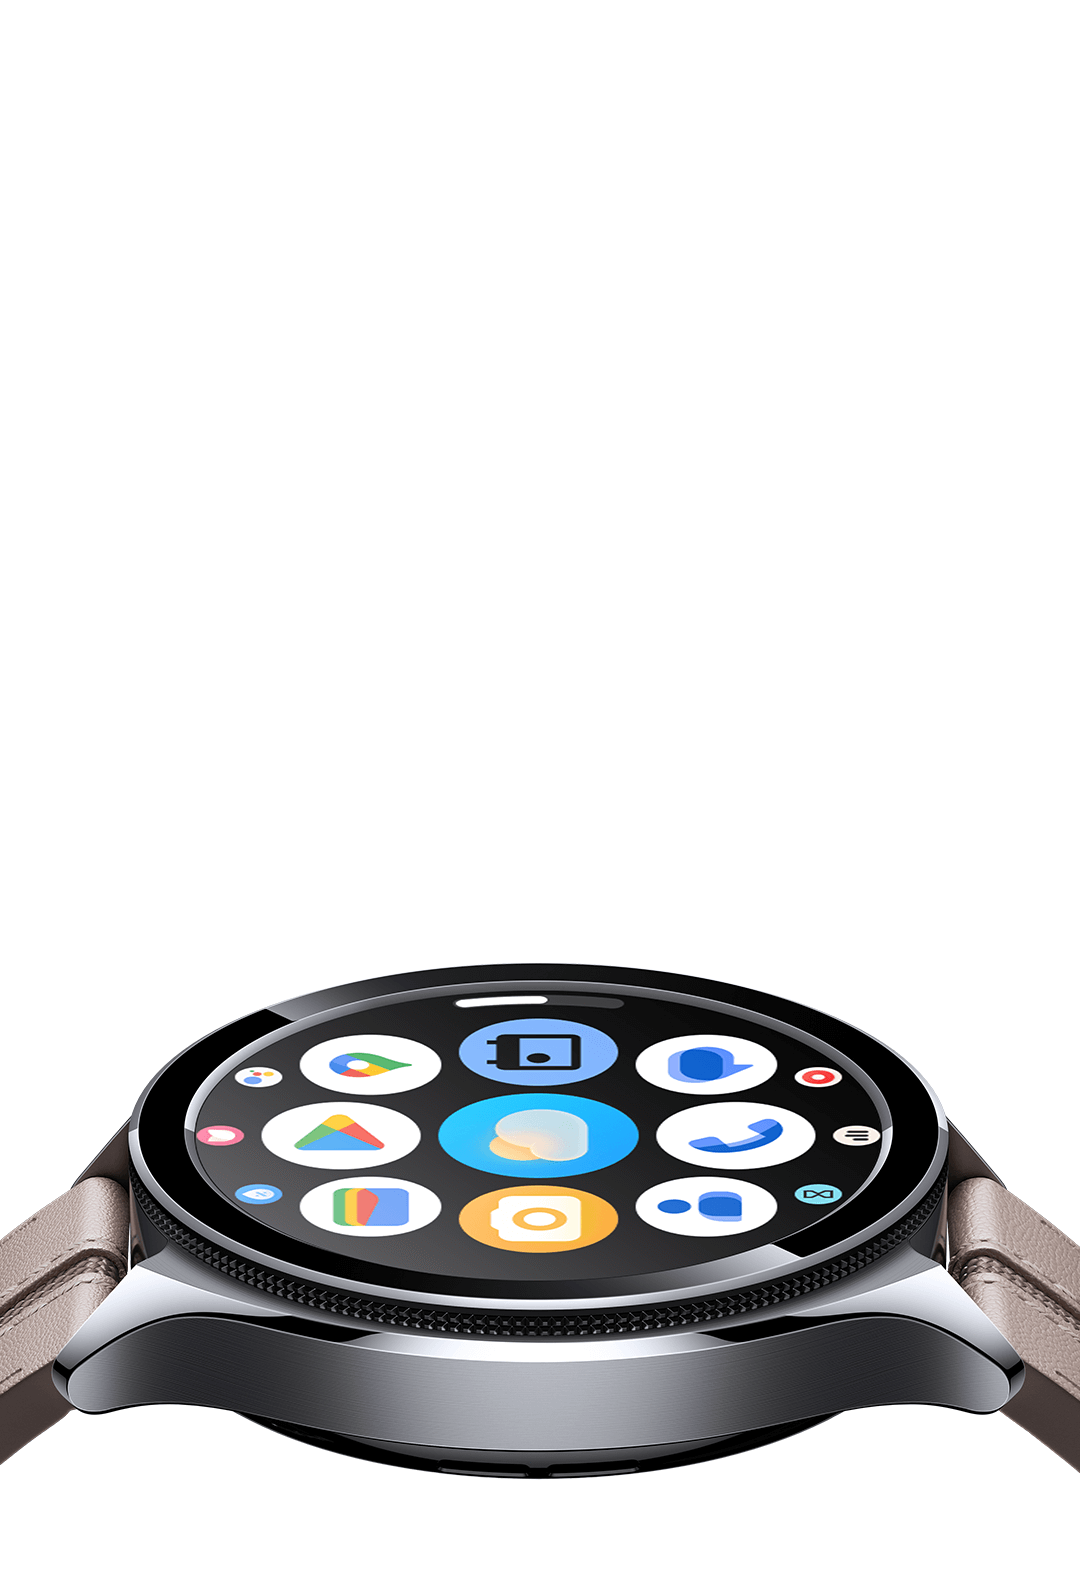 xiaomi-watch-2-pro - Xiaomi Colombia